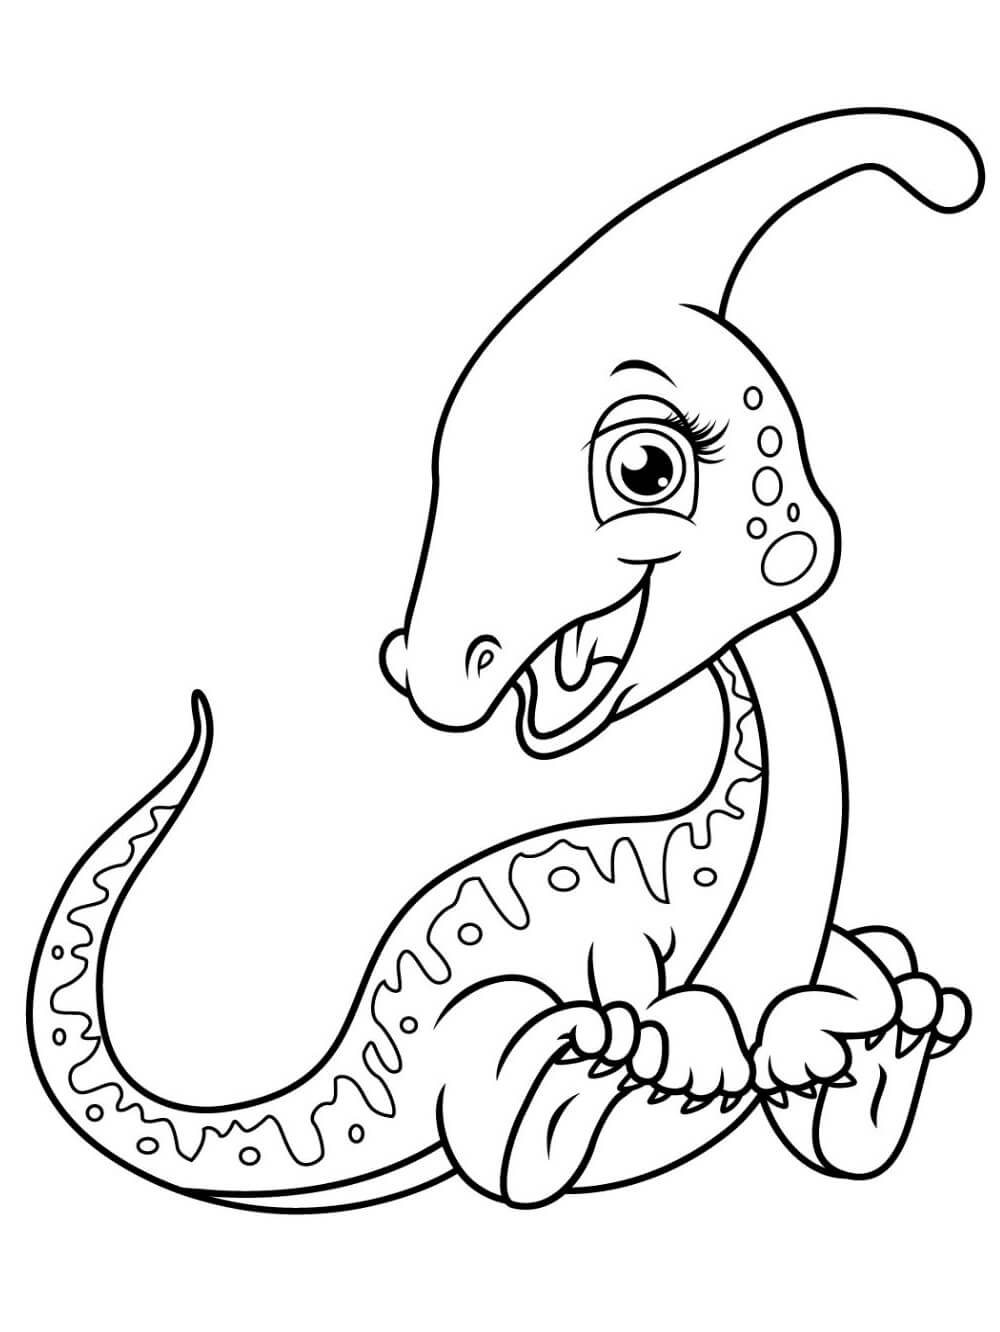 Mládě Parasaurolophus omalovánka